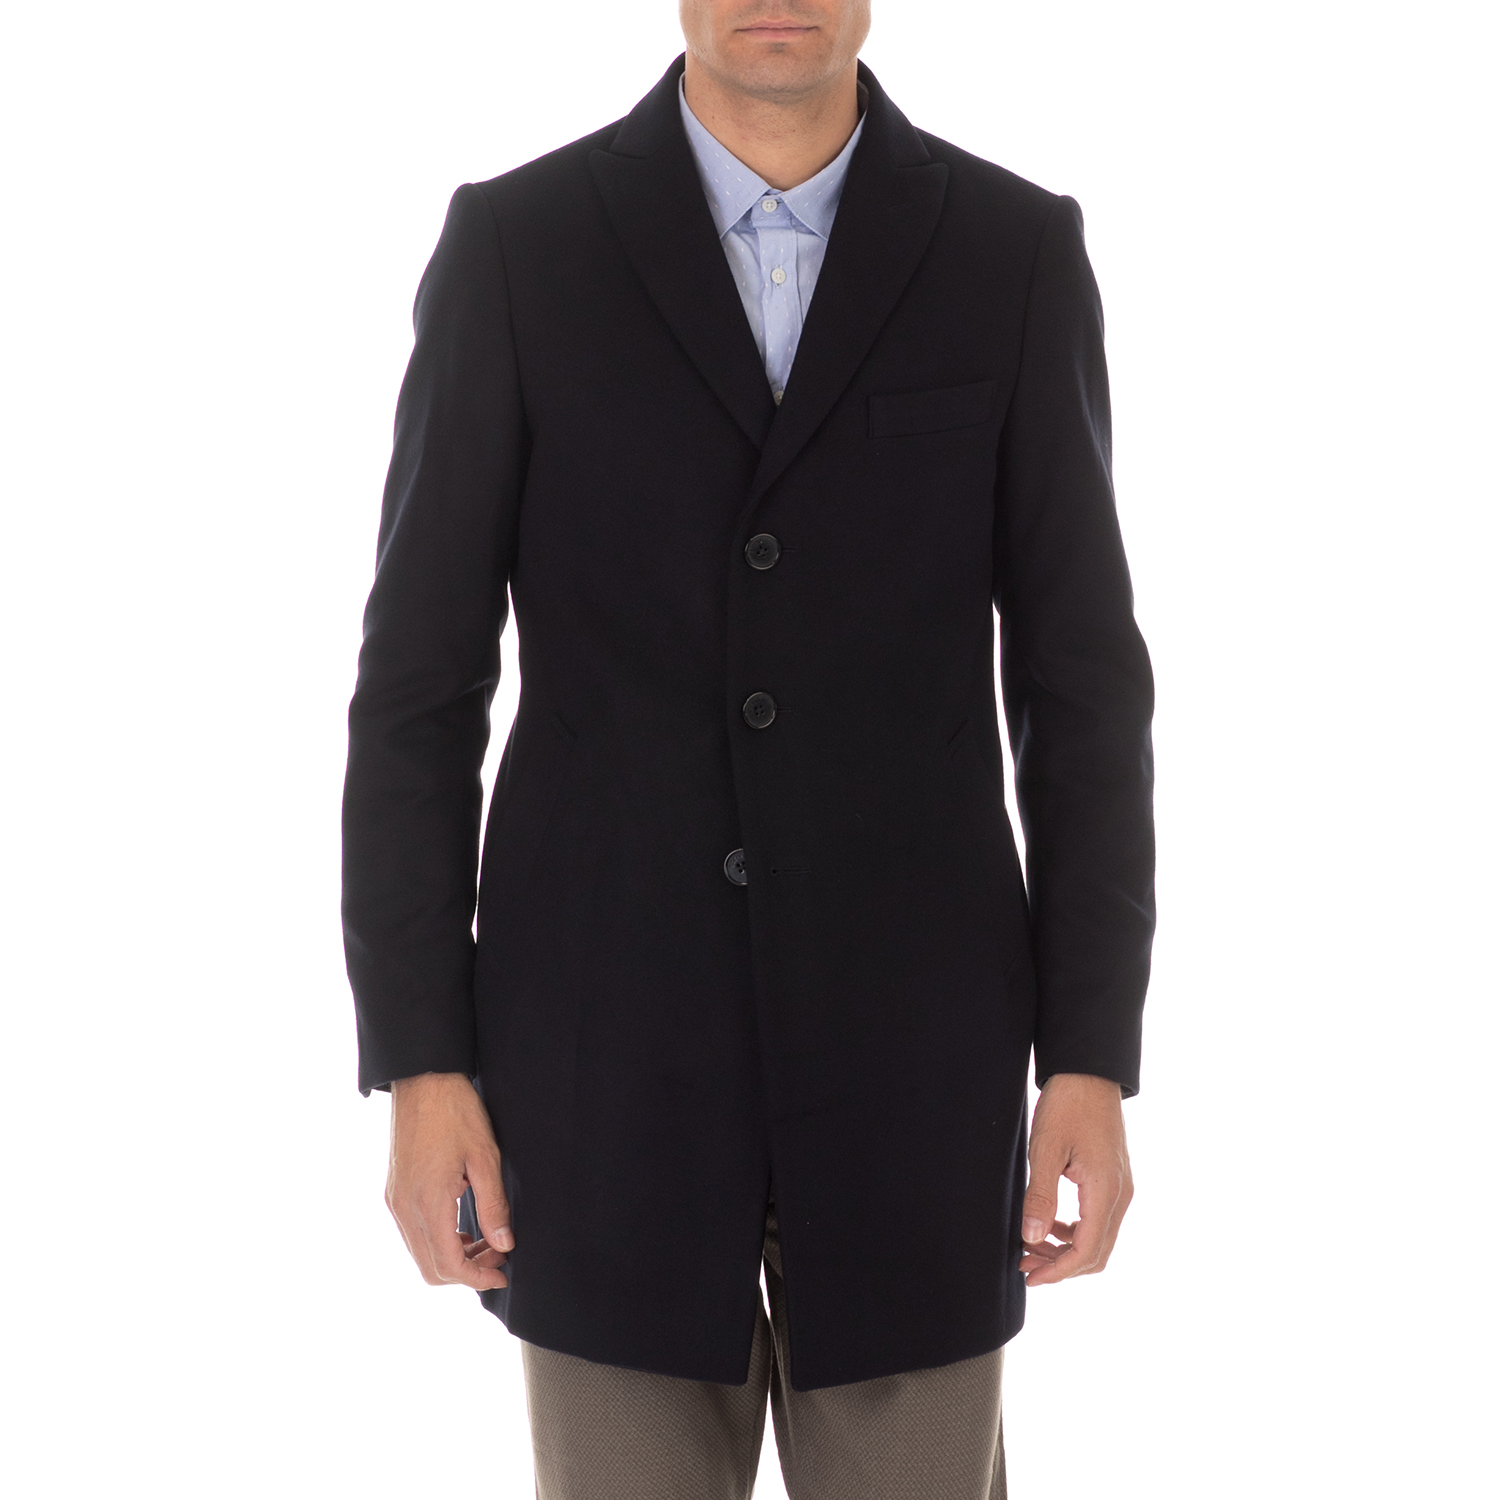 Ανδρικά/Ρούχα/Πανωφόρια/Παλτό SSEINSE - Ανδρικό παλτό SSEINSE CAPPOTTO μπλε